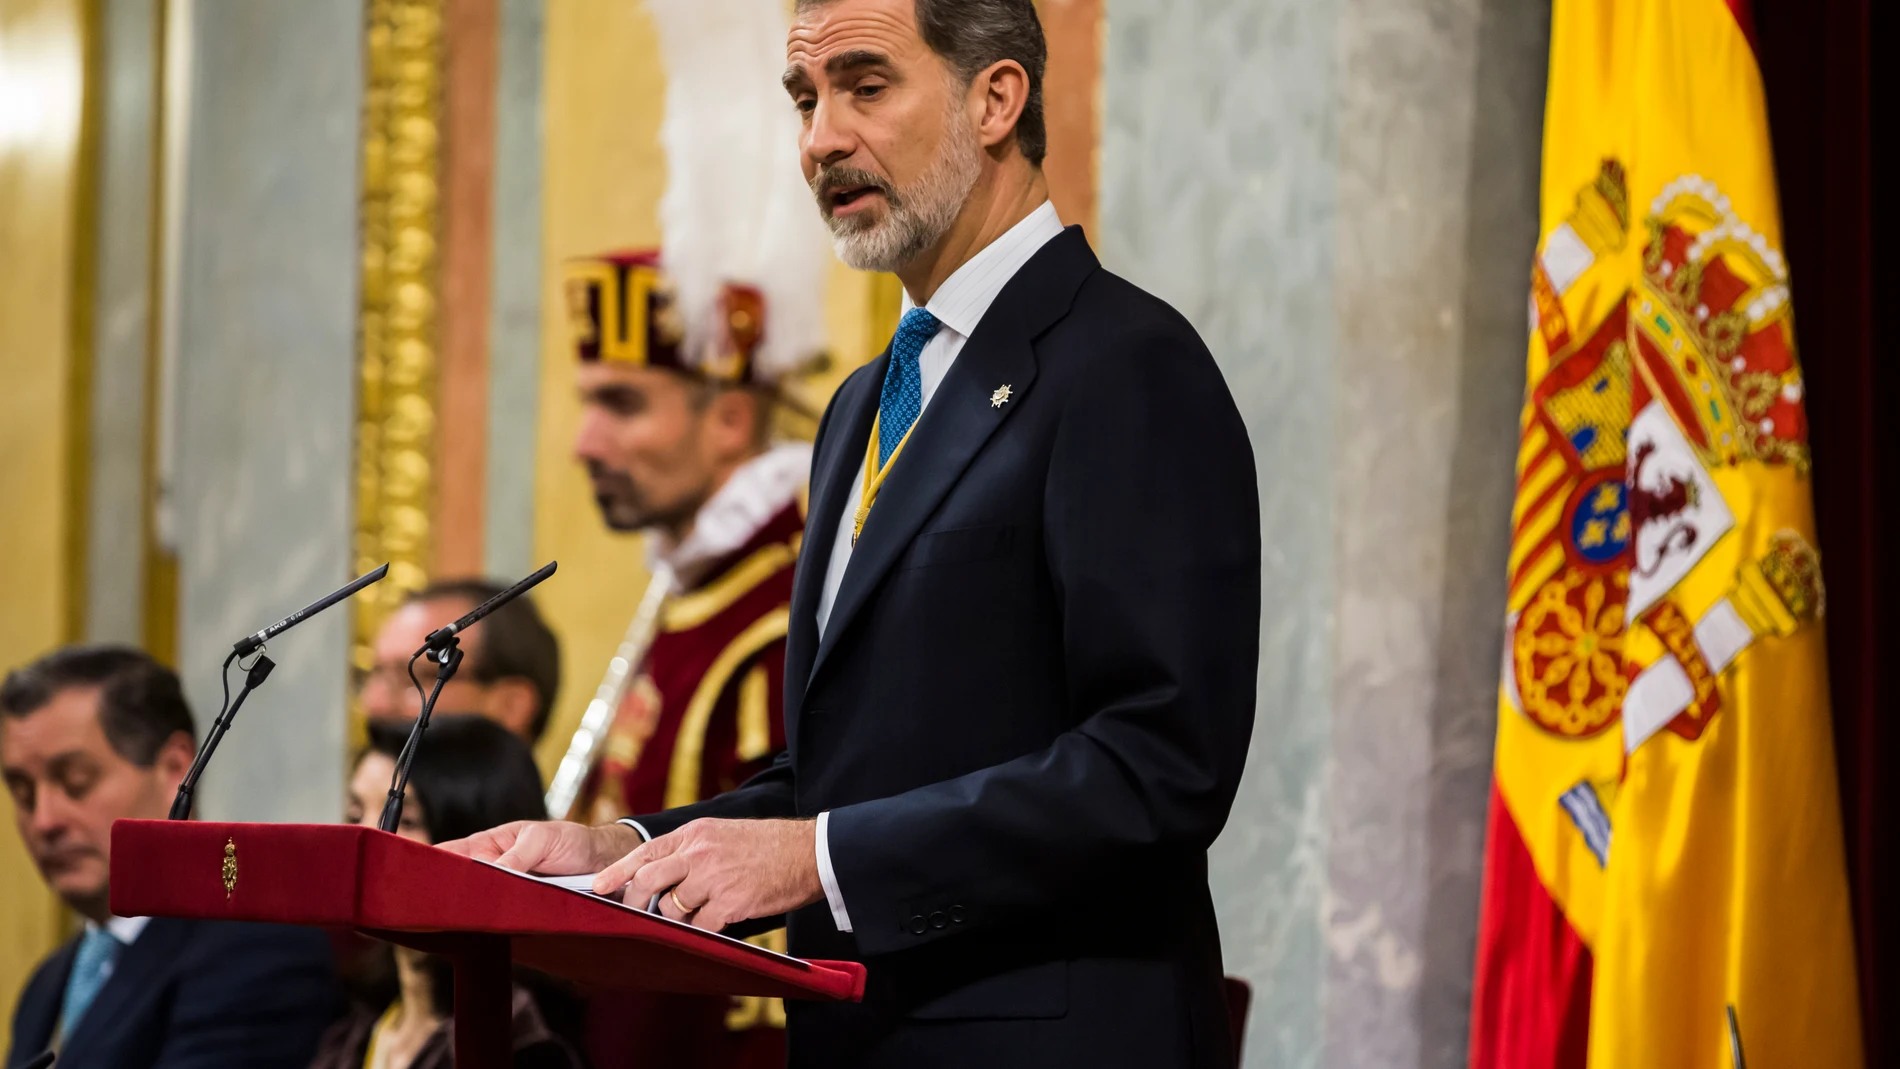 El Rey Felipe VI durante su discurso en el Congreso de los Diputados.